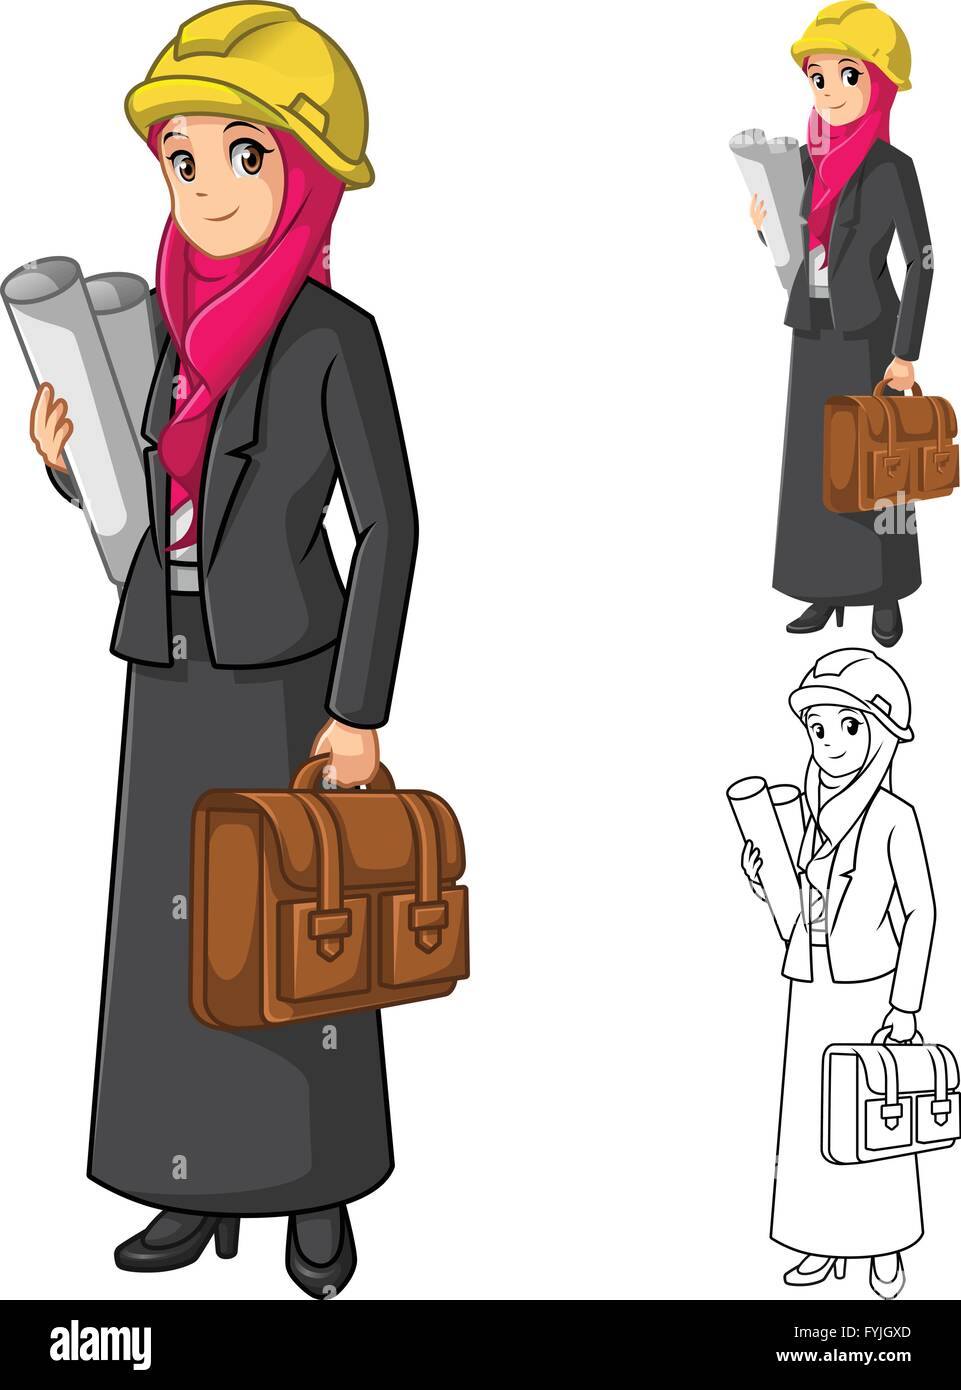 Muslimische Geschäftsfrau Architekten tragen rosa Schleier oder Schal mit Holding Aktenkoffer-Cartoon-Charakter-Vektor-Illustration Stock Vektor